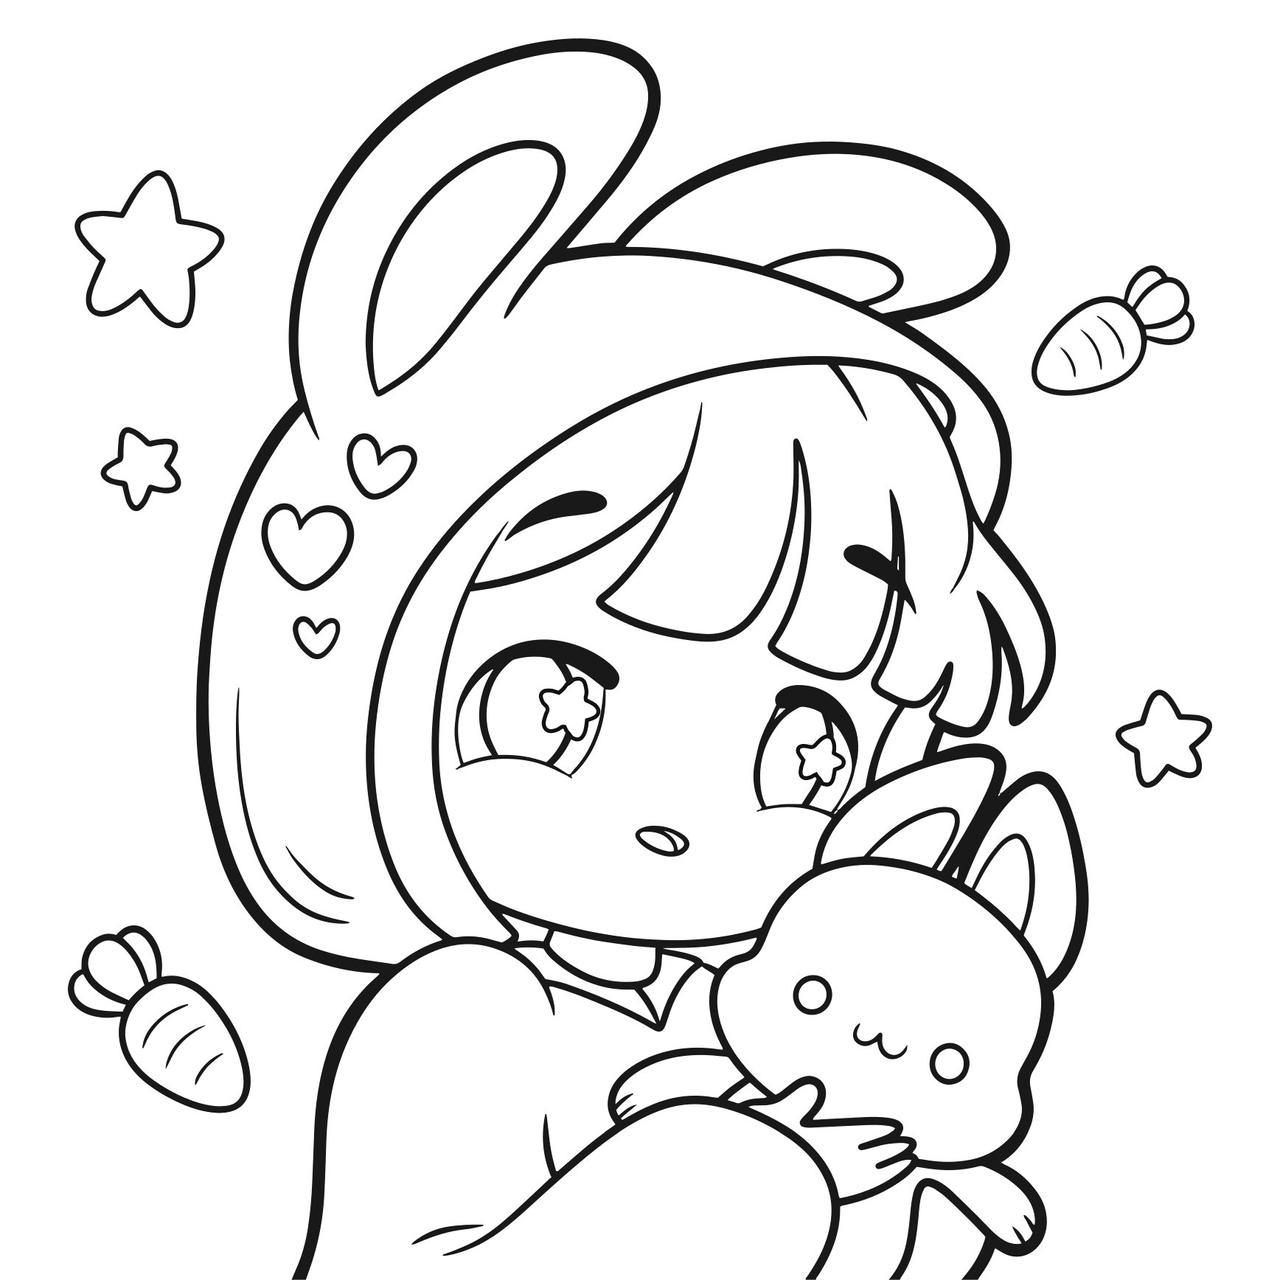 Kawaii child and bunny